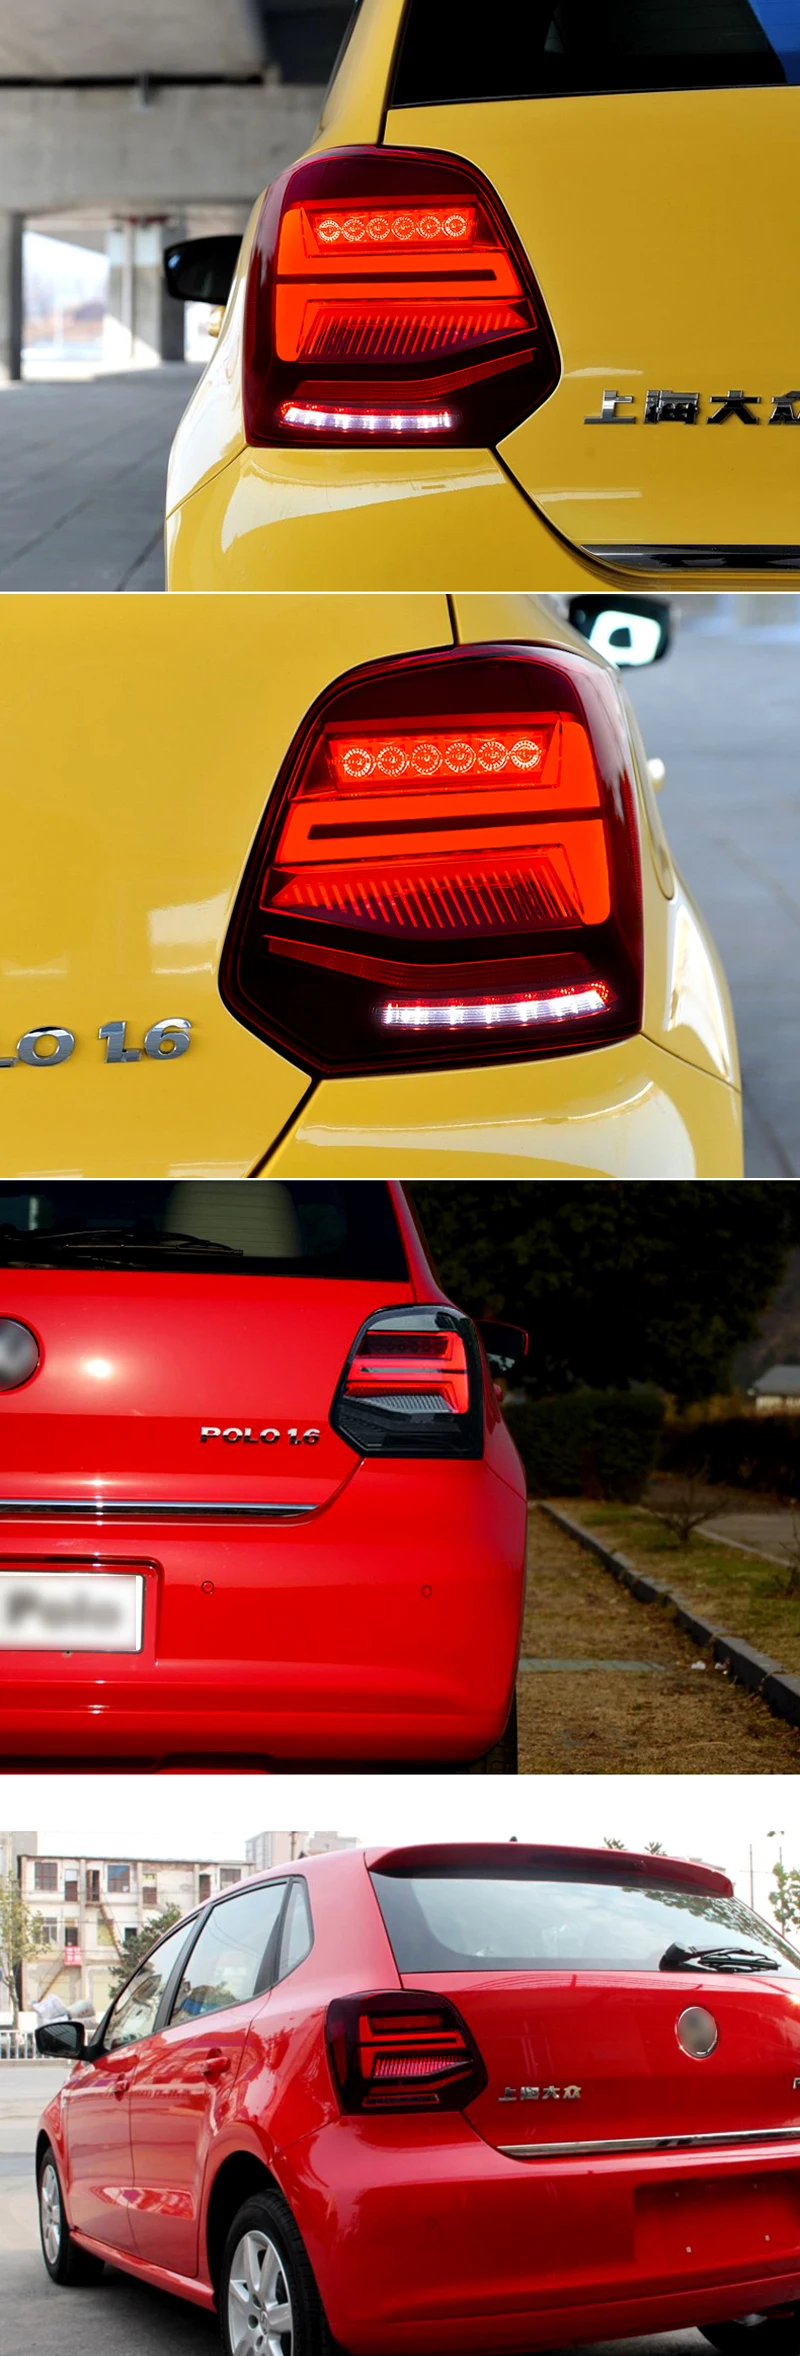 Автомобильный Стайлинг задний фонарь для Volkswagen Polo 2011- задний фонарь DRL+ Динамический сигнал поворота+ задний фонарь+ светодиодный тормоз